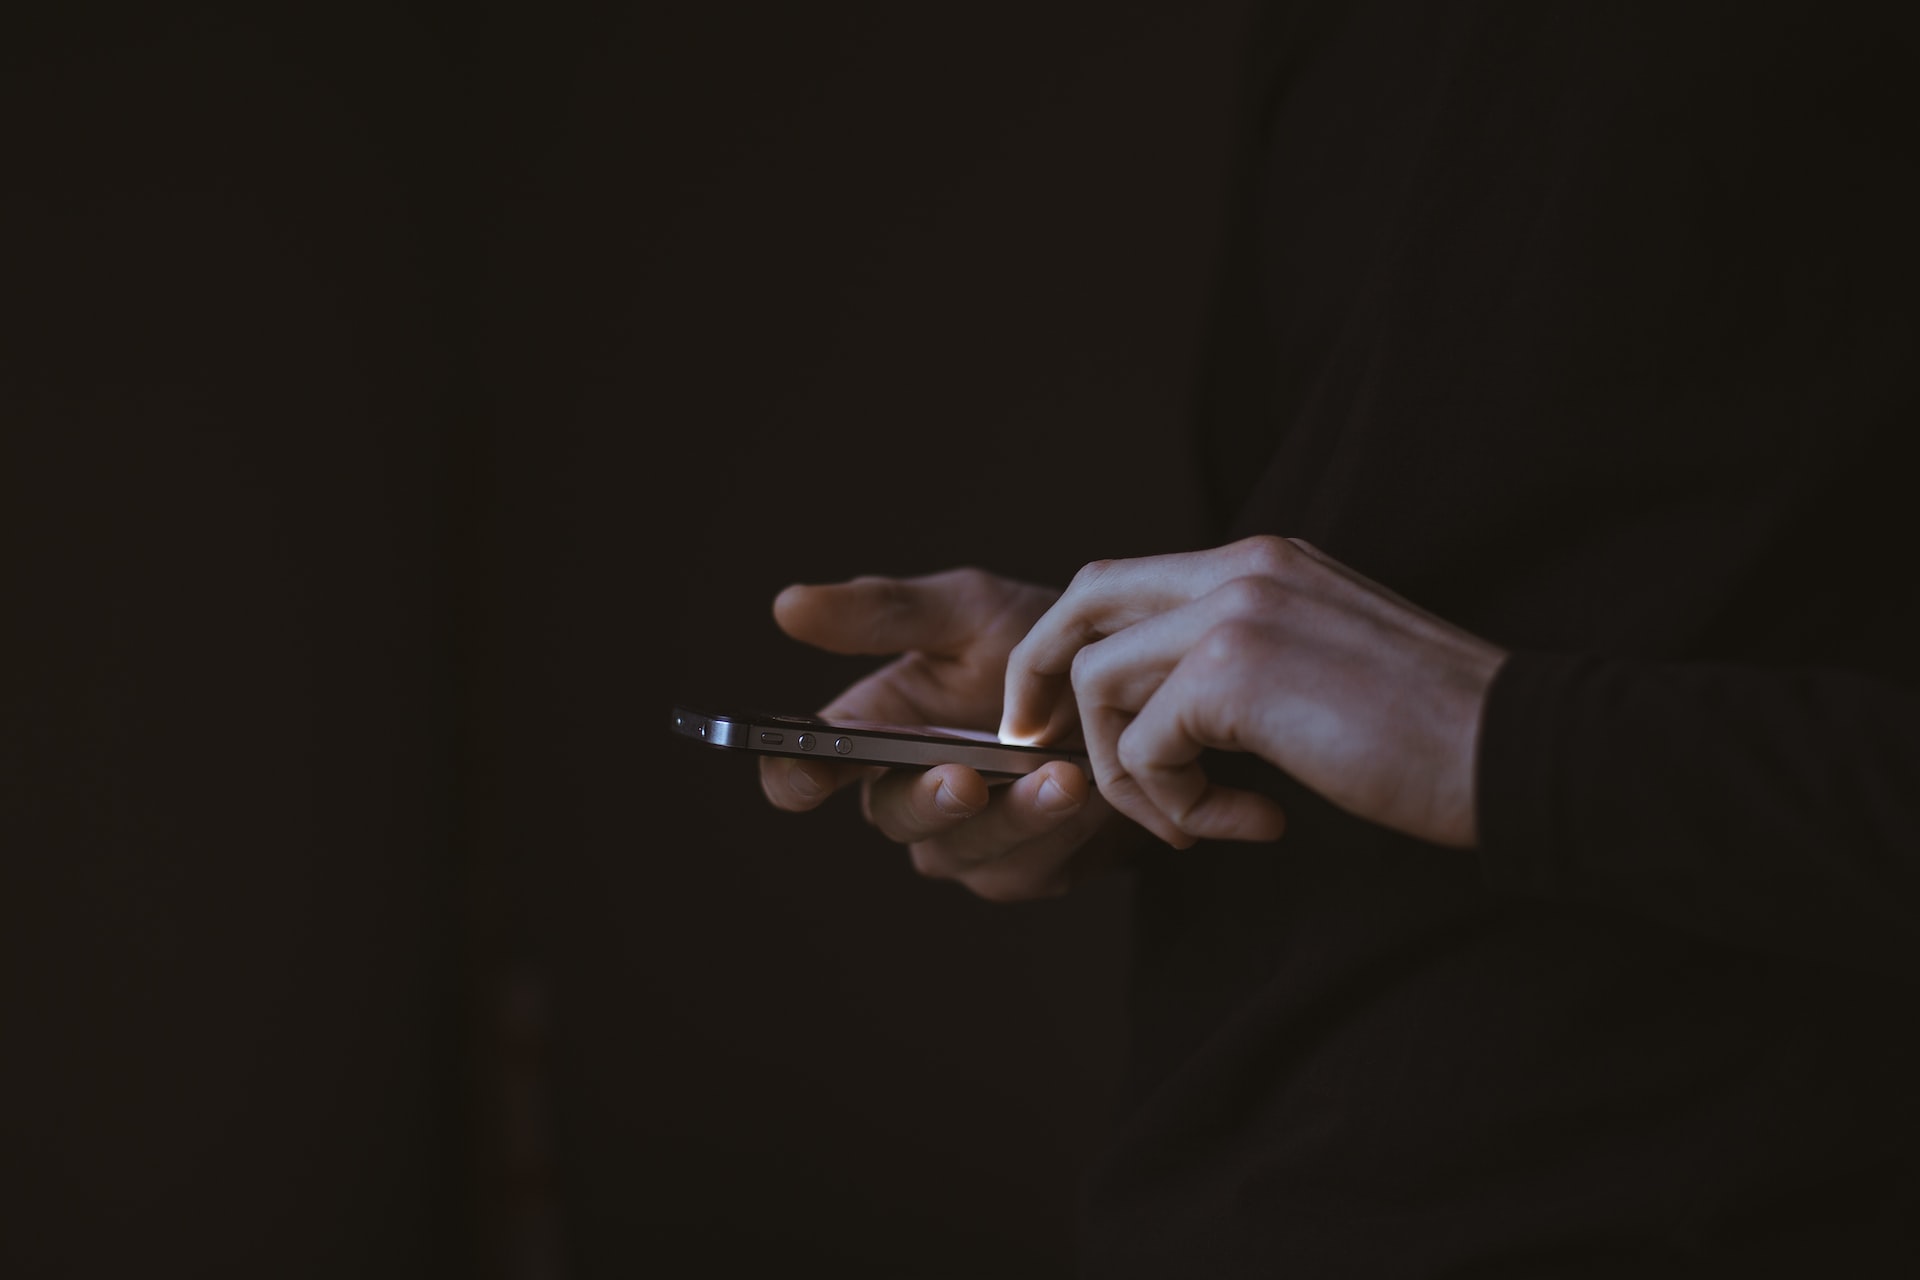 Två händer håller en smartphone i mörkret